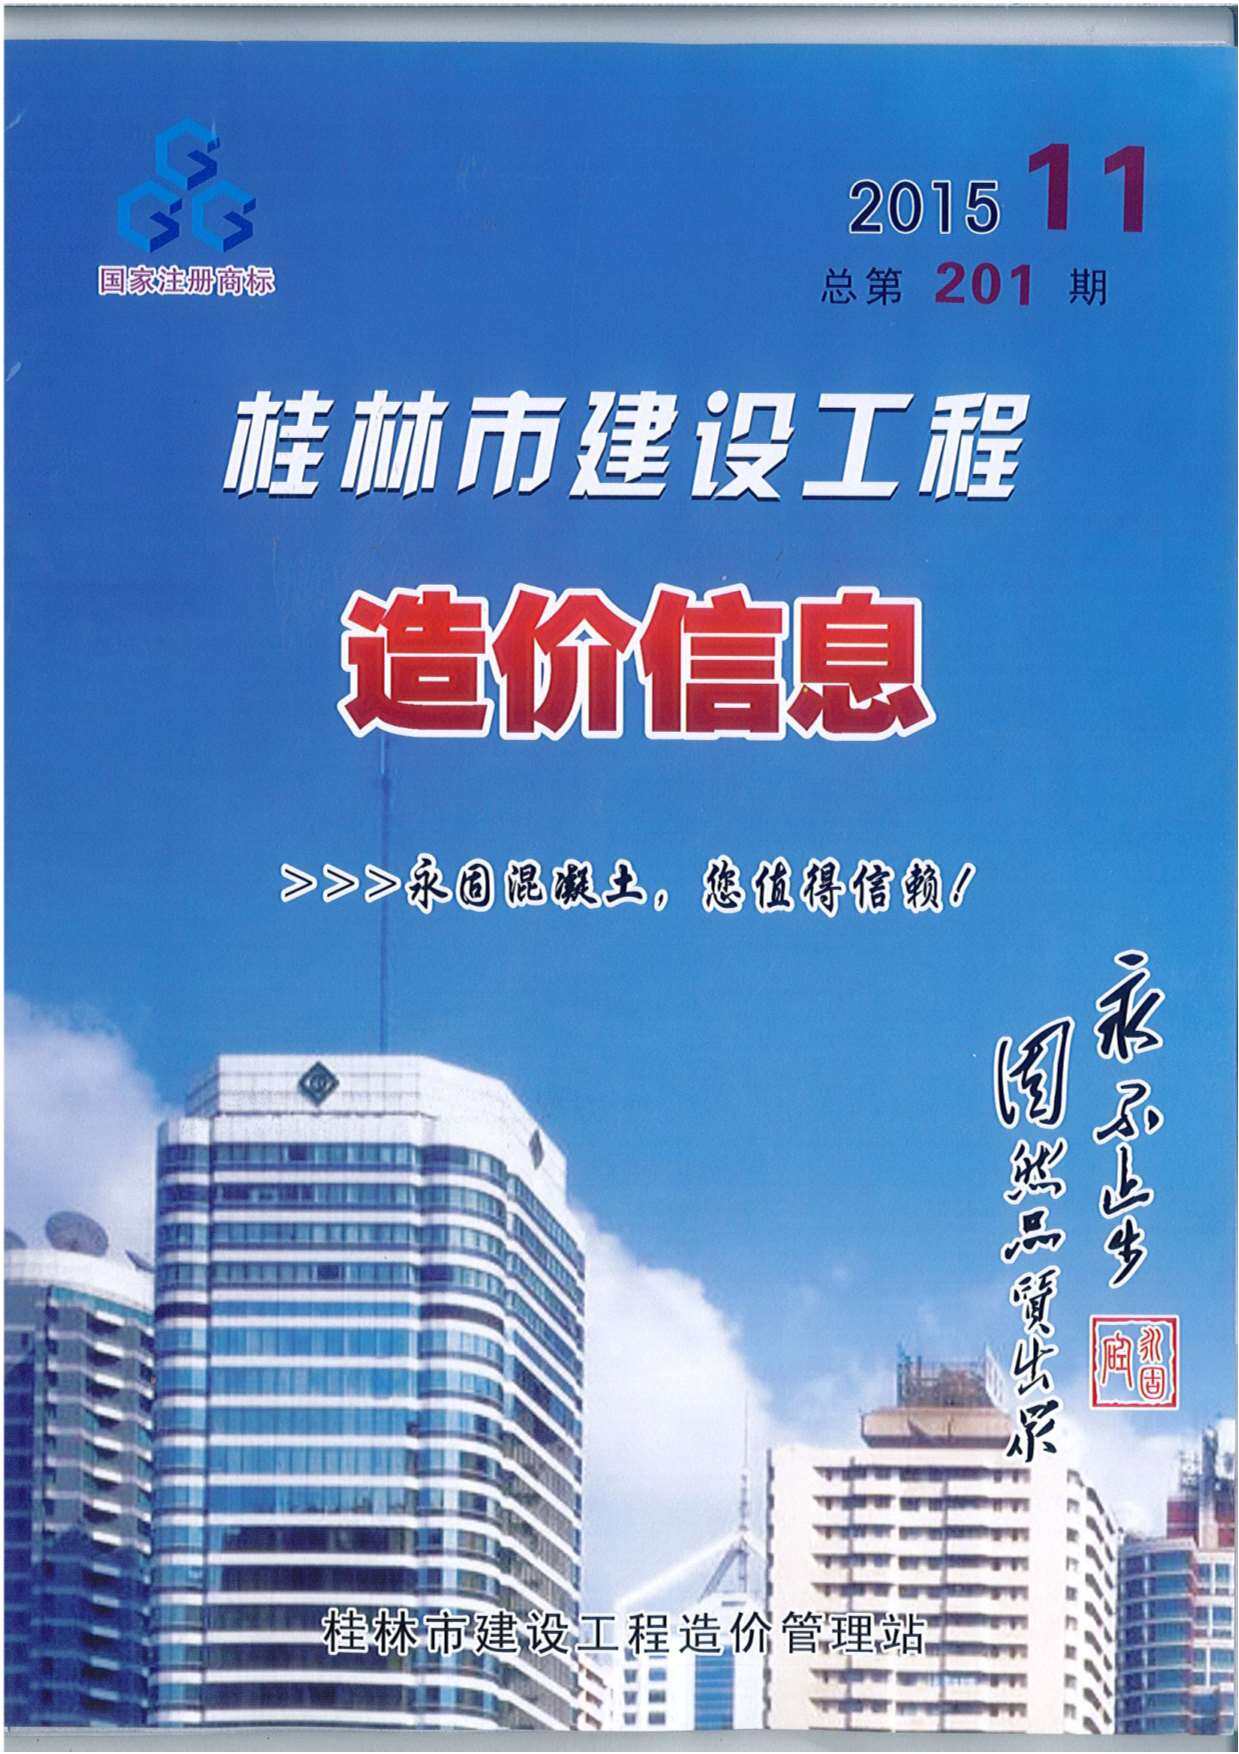 桂林市2015年11月工程造价信息期刊